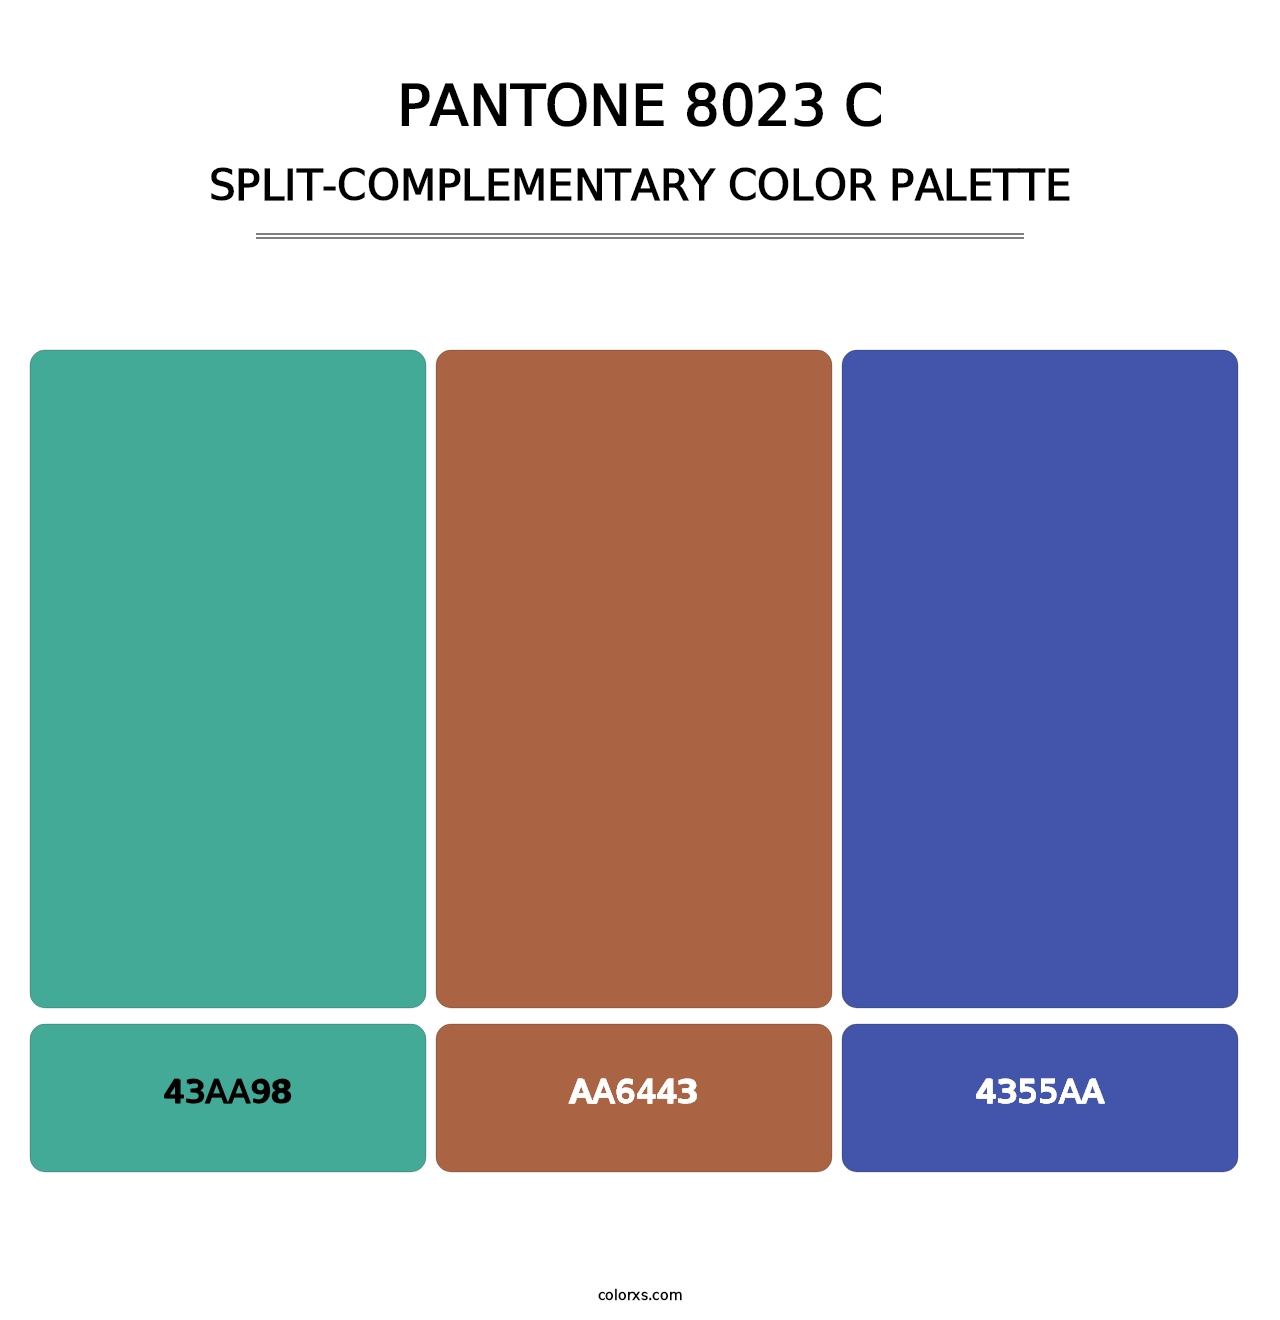 PANTONE 8023 C - Split-Complementary Color Palette